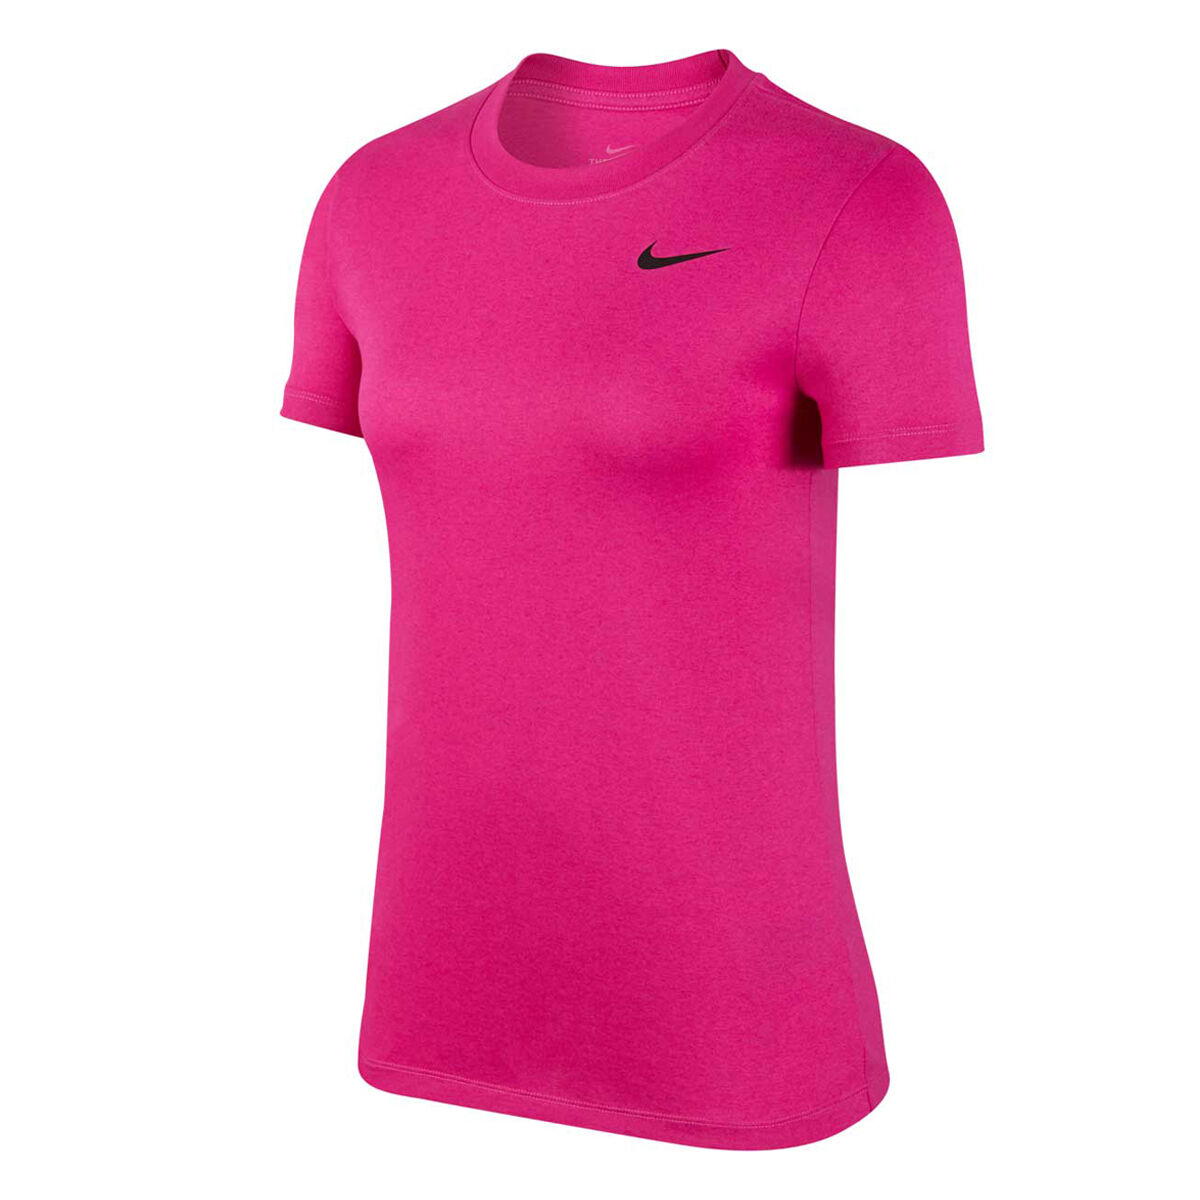 pink dri fit shirt